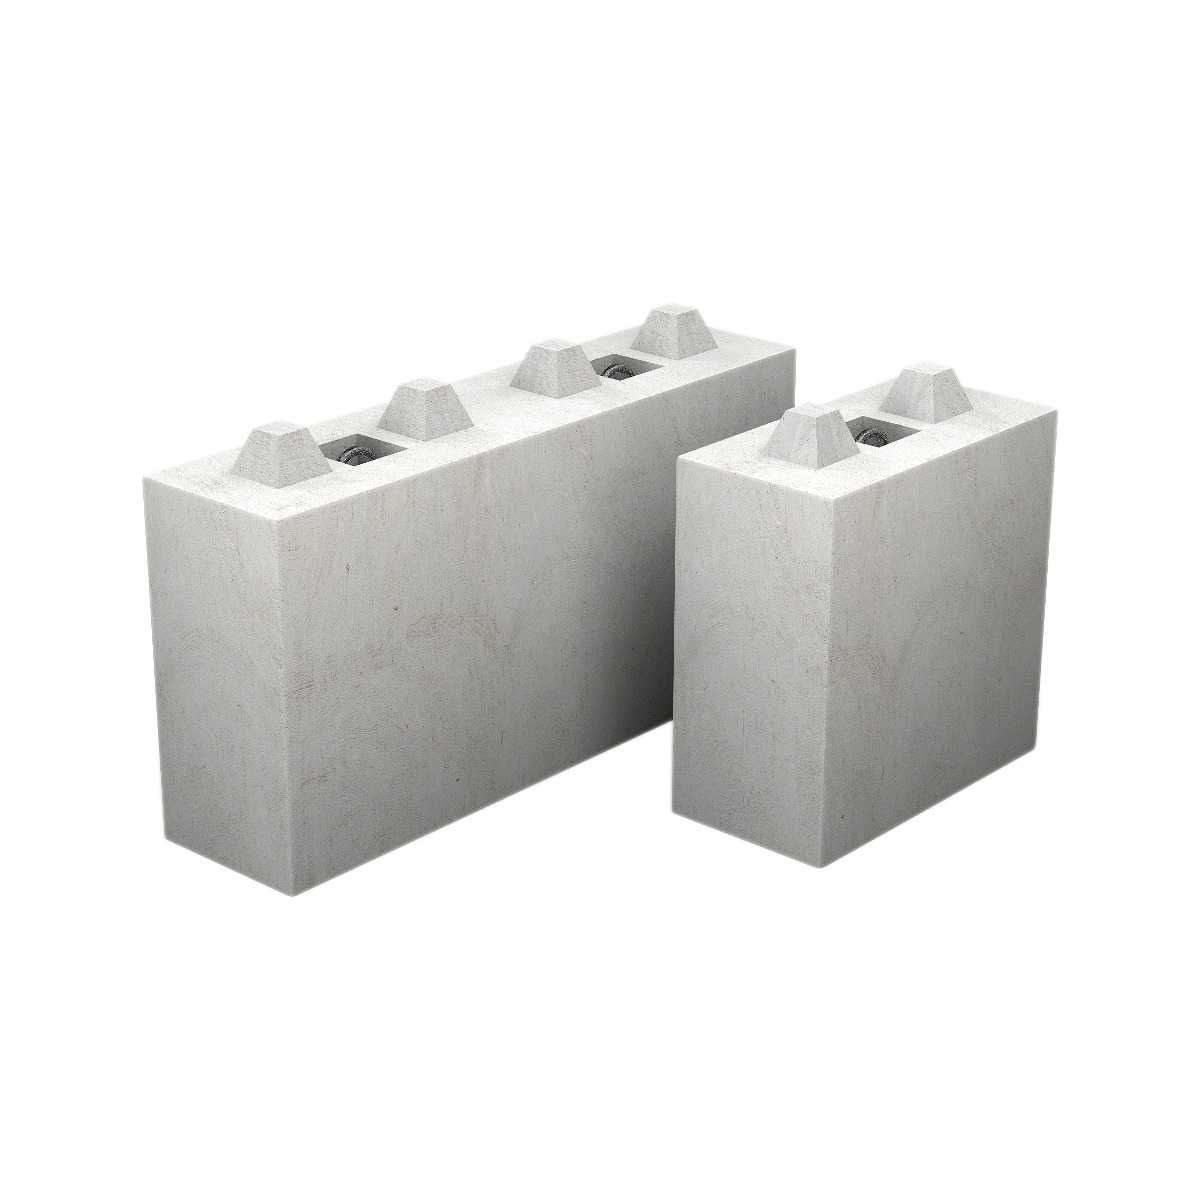 Bloki betonowe / klocki / blok betonowy / mur oporowy / ściana oporowa